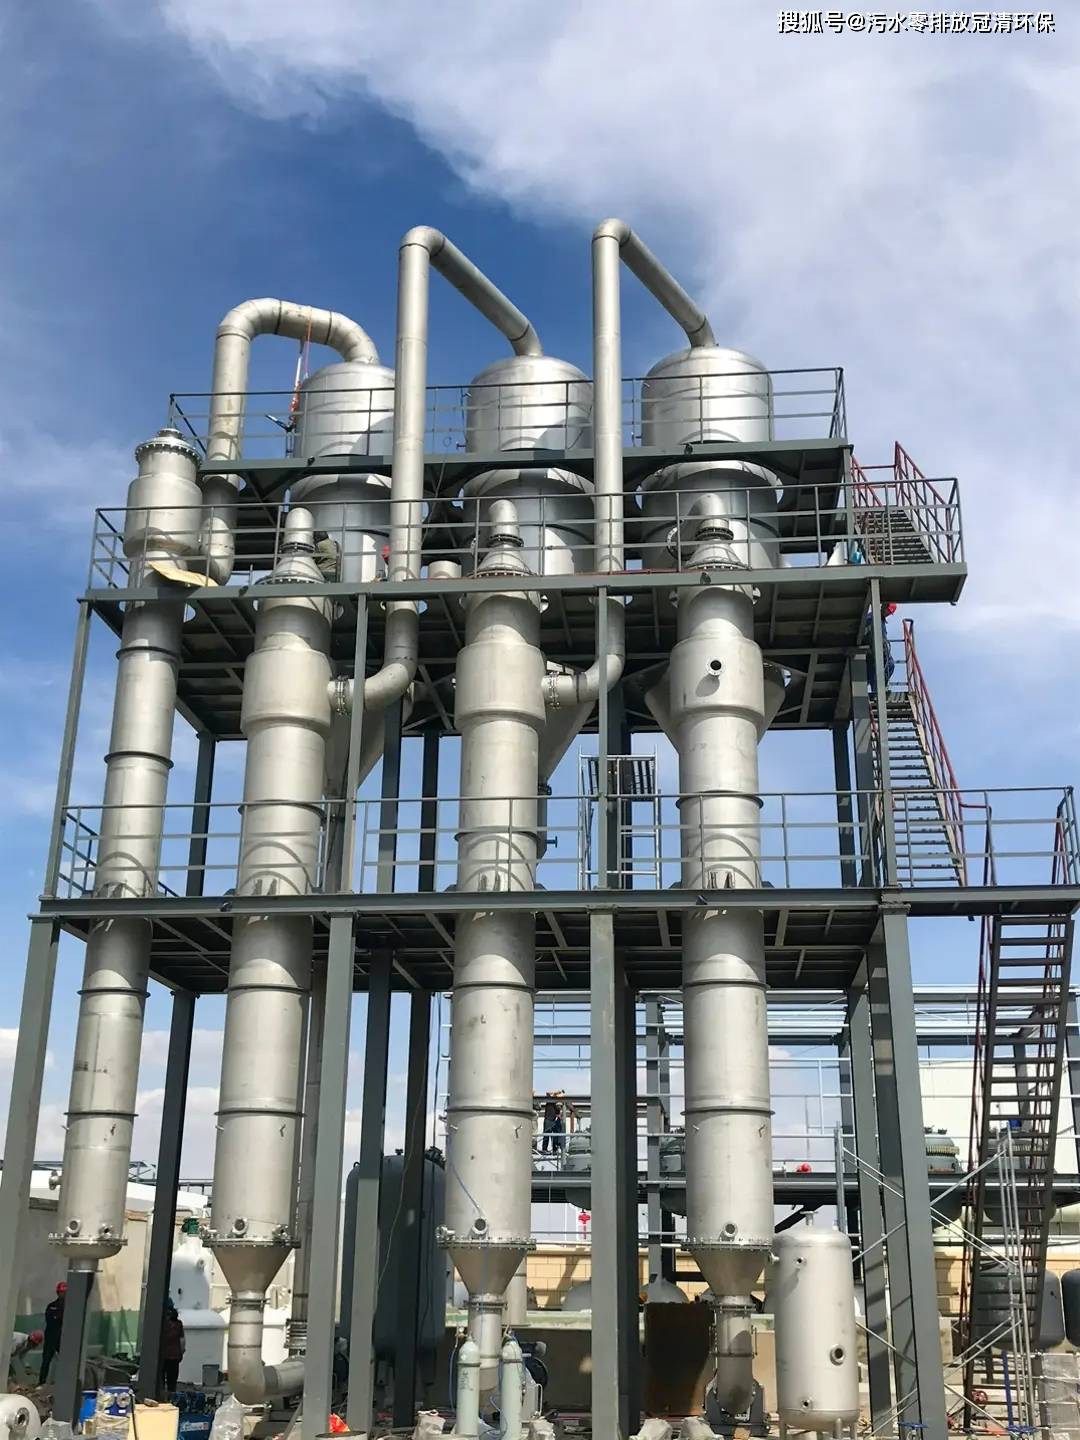 硫酸钾废水蒸发器是一种高效处理硫酸钾废水的设备,它采用蒸发浓缩